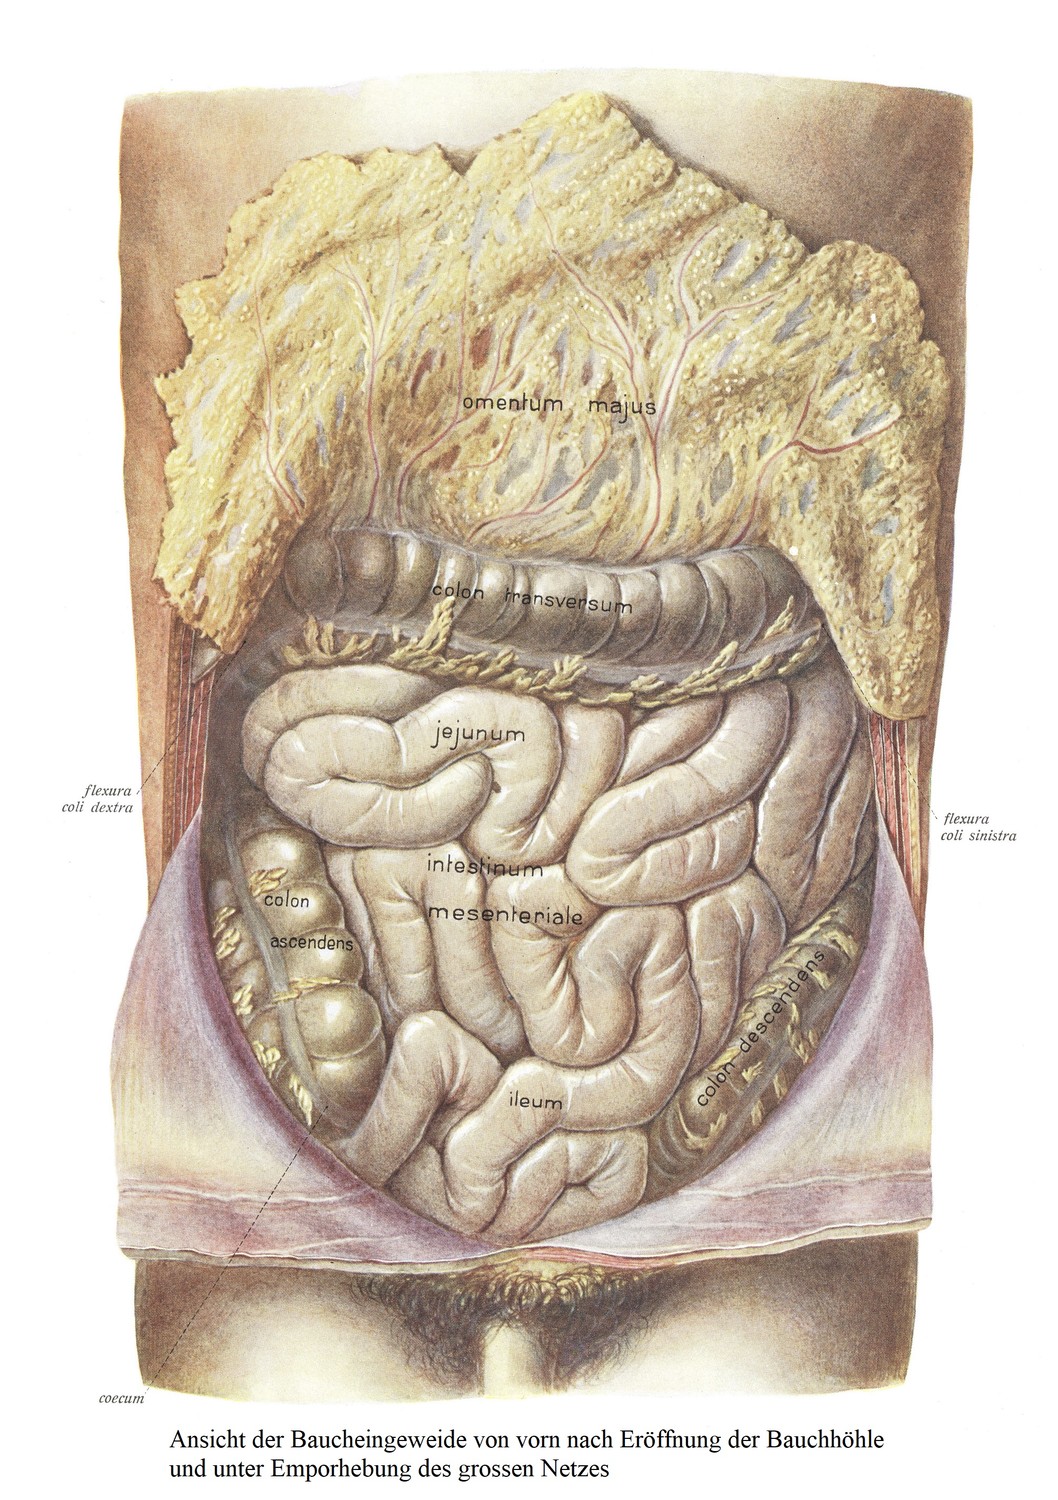 Передний вид органов брюшной полости после вскрытия брюшной полости и поднятия большой сетки. С большой сеткой поперечно-ободочная кишка также несколько отступила. 